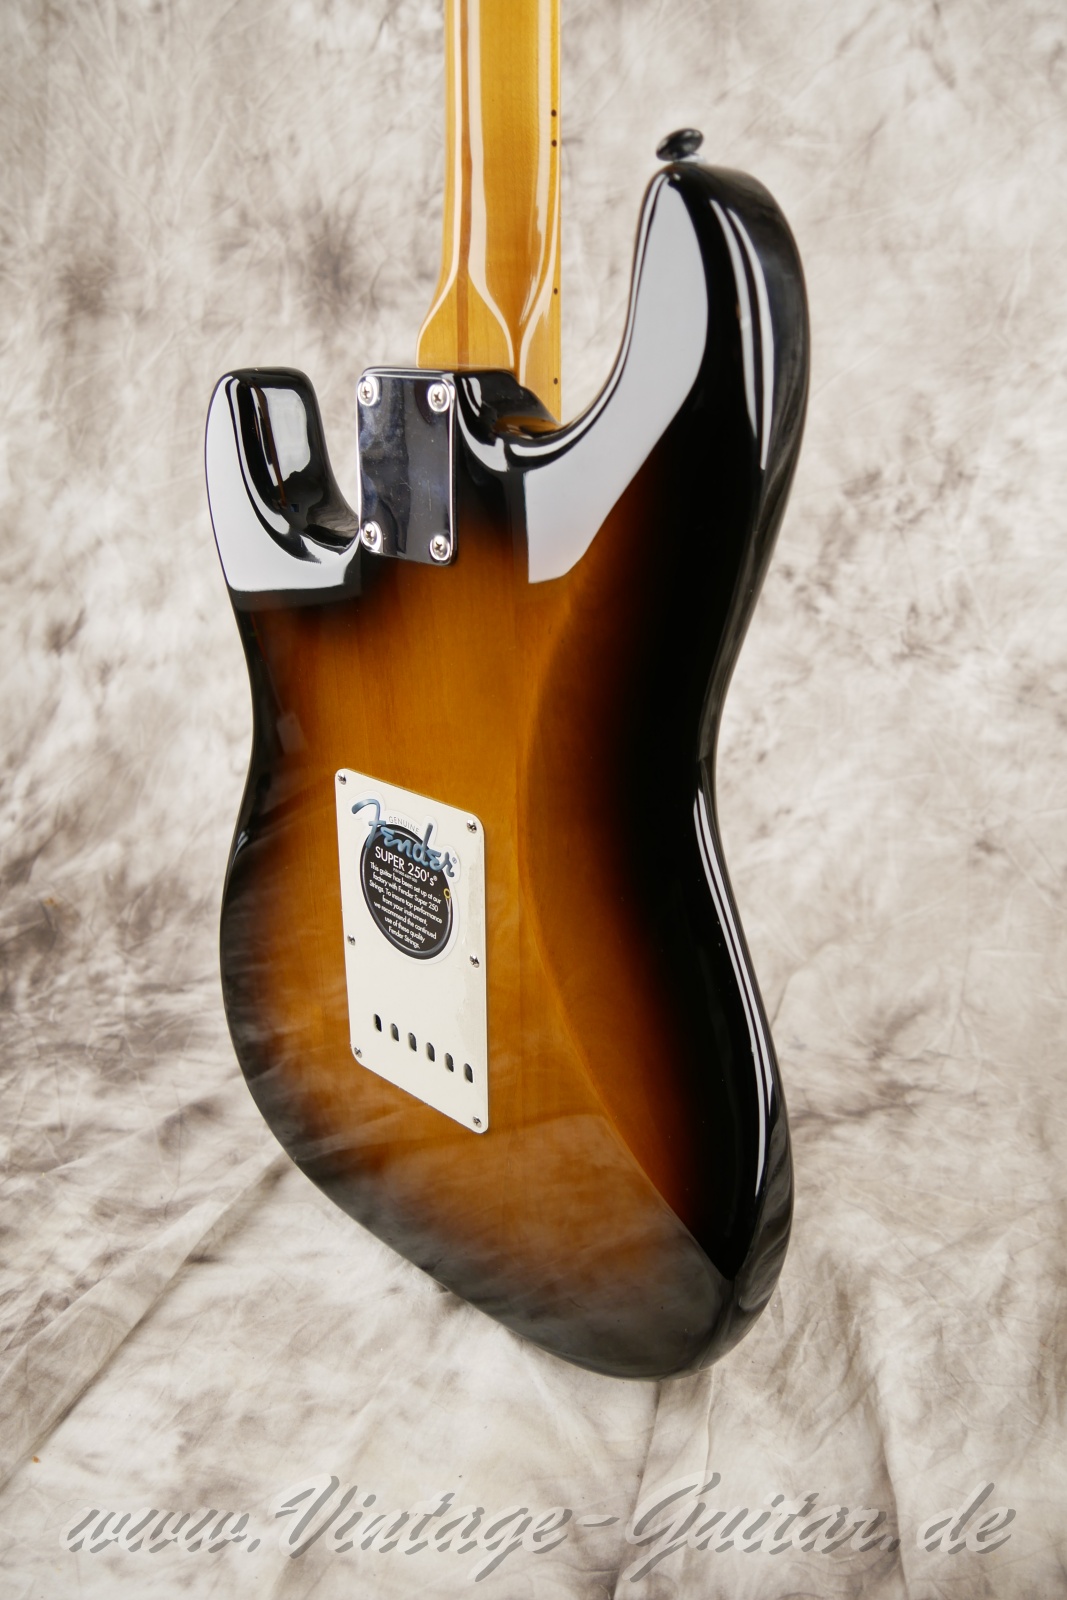 Fener-Stratocaster-Classic-player-series-50s-2007-sunburst-012.jpg